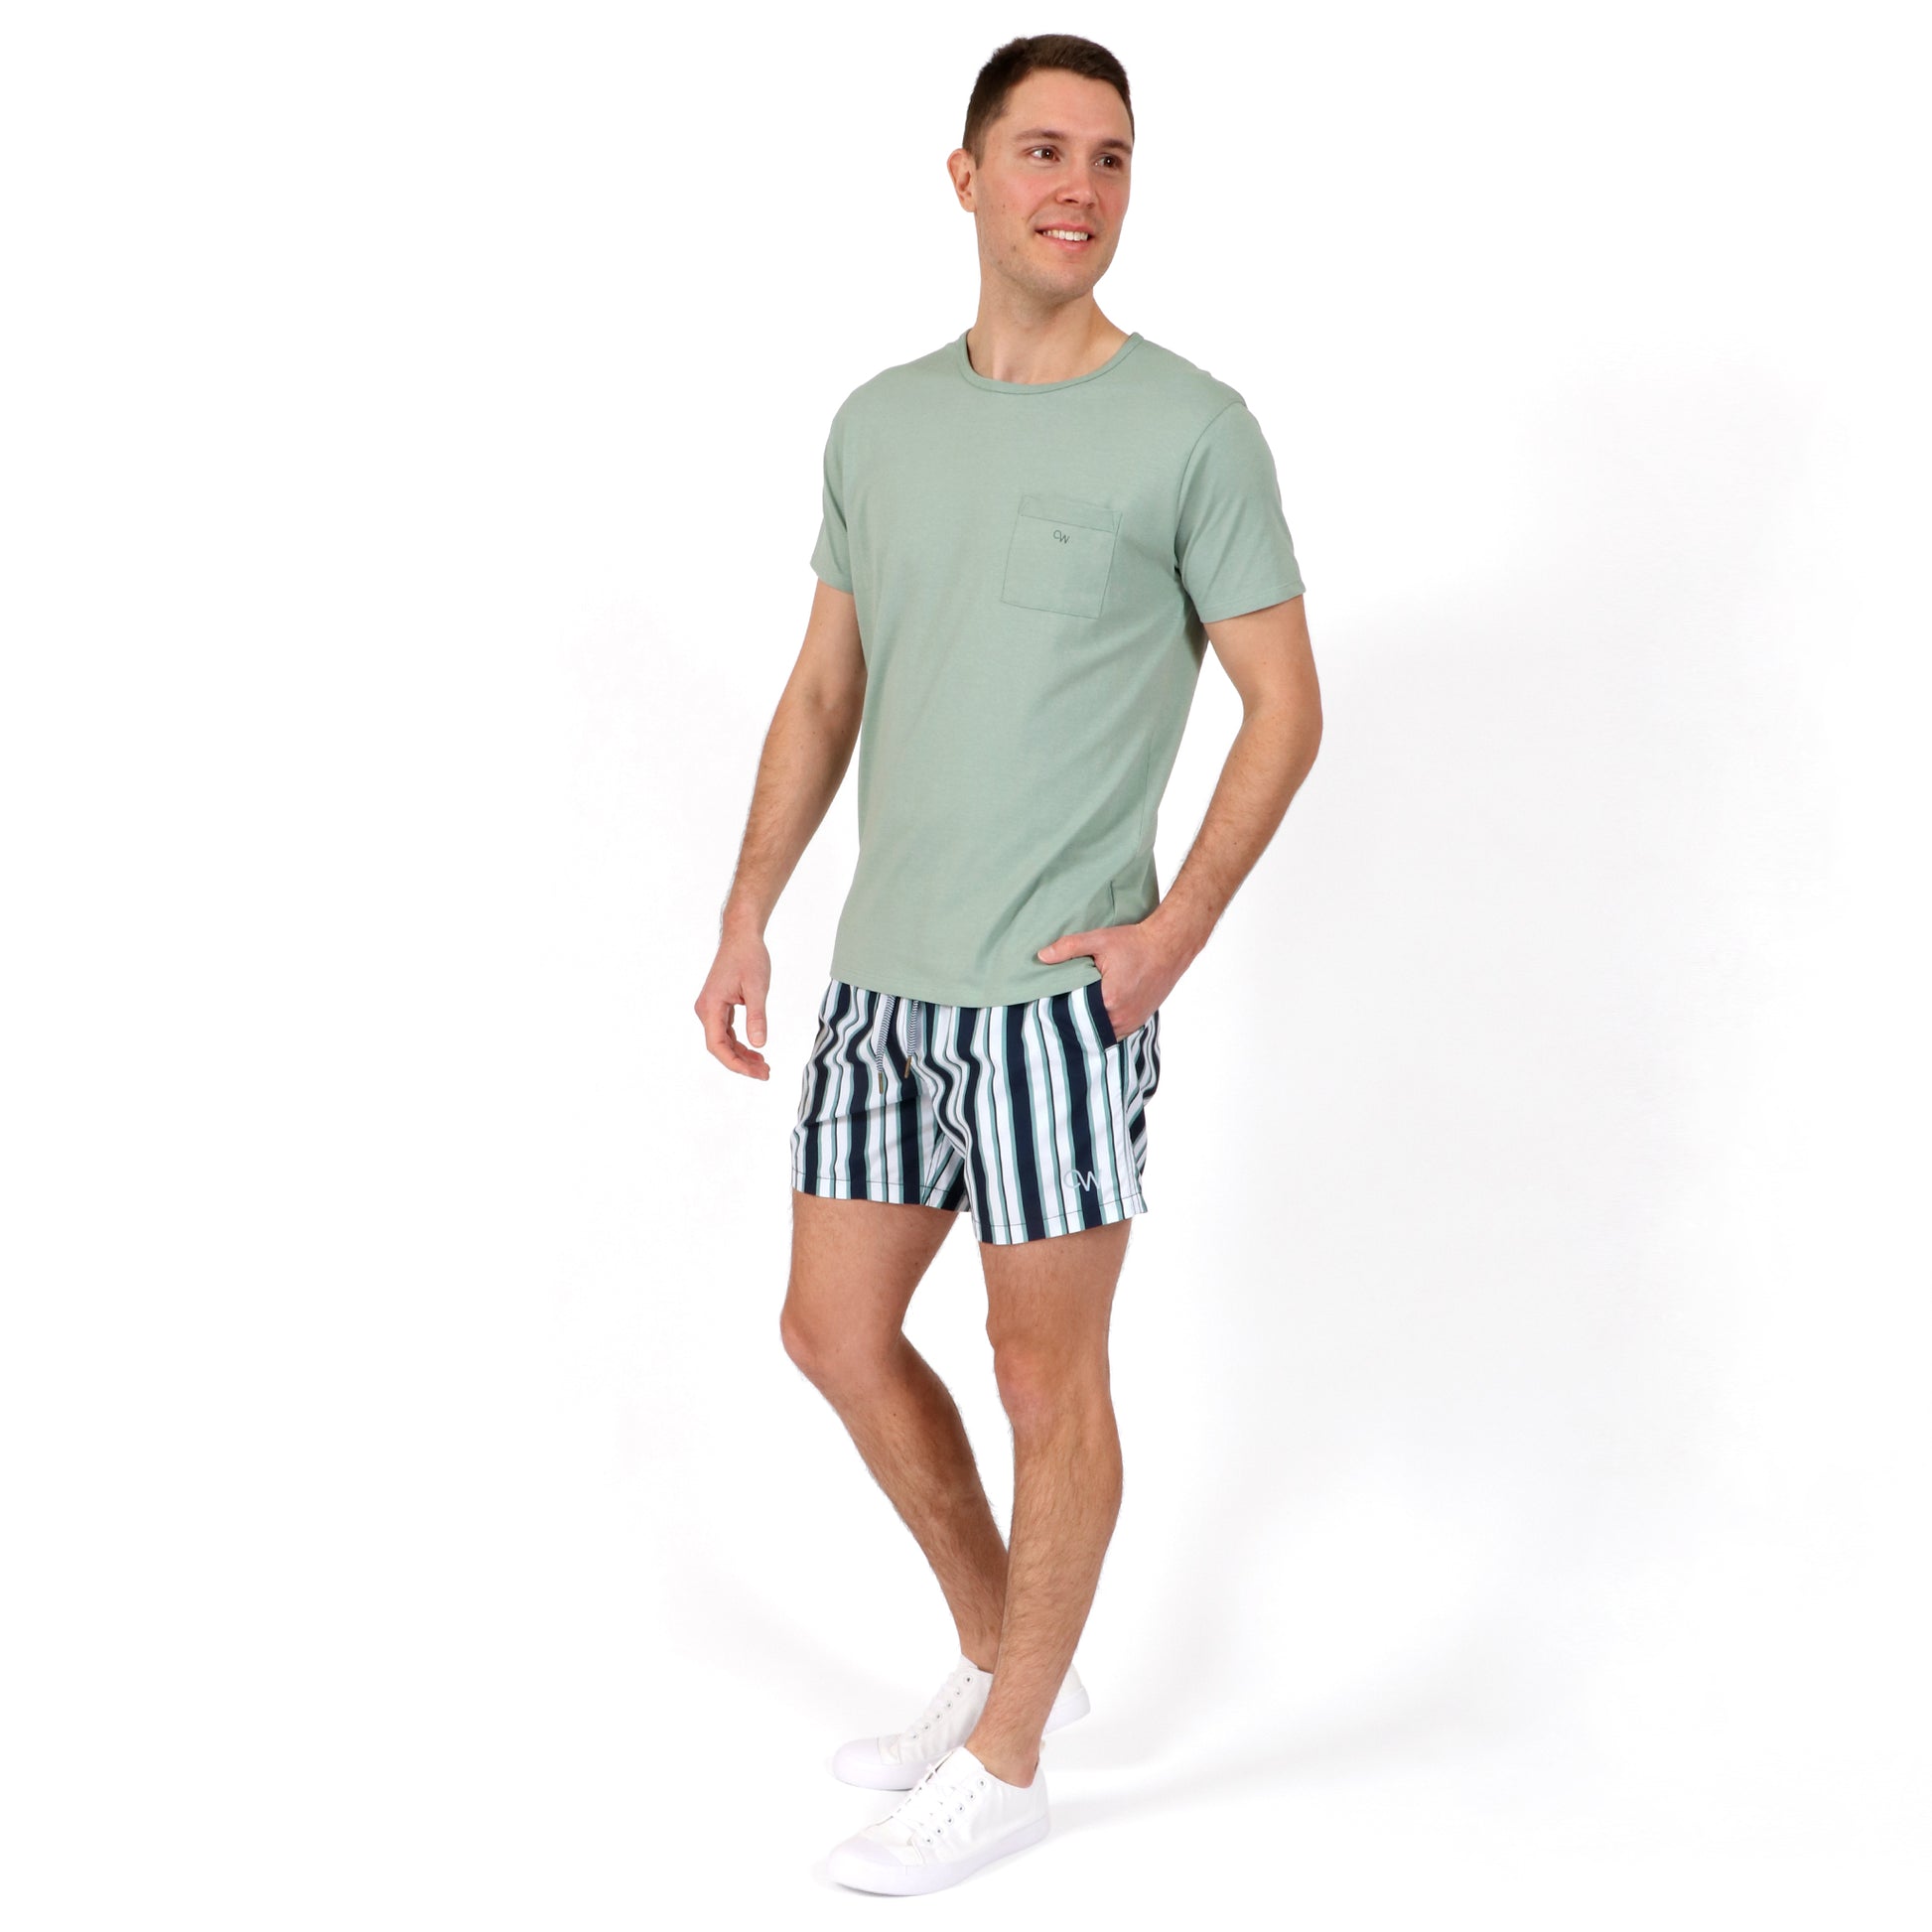 OWTS2101 Moss green Essential Beach T-Shirt  and OWSS2106 Boradwalk stripe men's swim short outfit